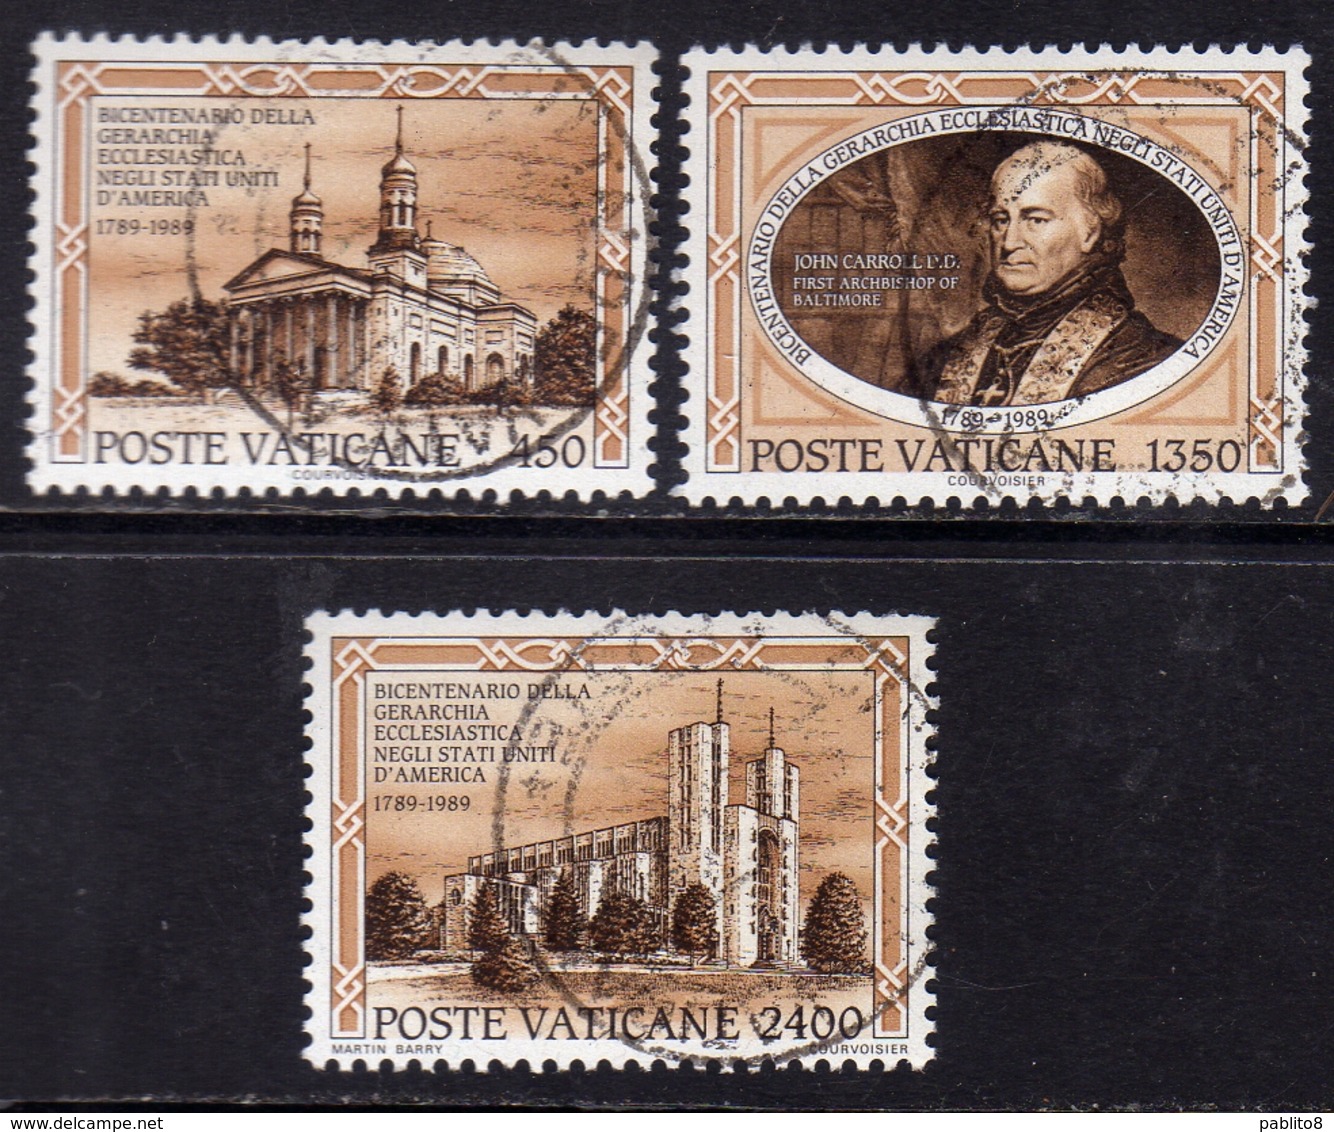 CITTÀ DEL VATICANO VATICAN VATIKAN 1989 GERARCHIA ECCLESIASTICA NEGLI USA ECCLESIASTICAL HIERARCHY SERIE SET USATA USED - Used Stamps